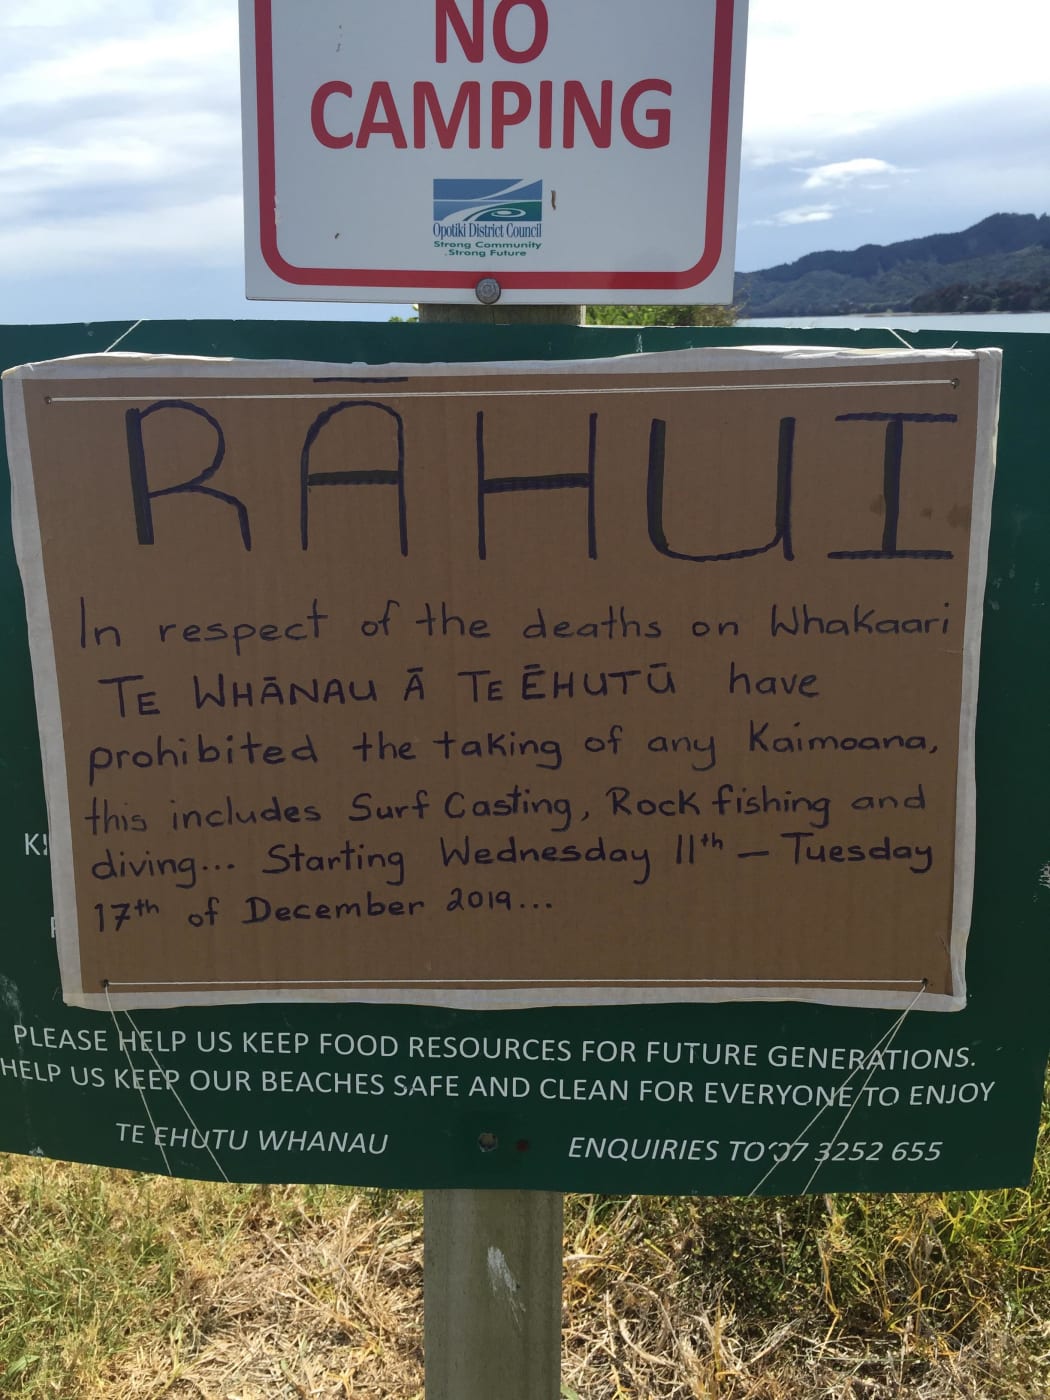 Whakaari / White Island rāhui sign.